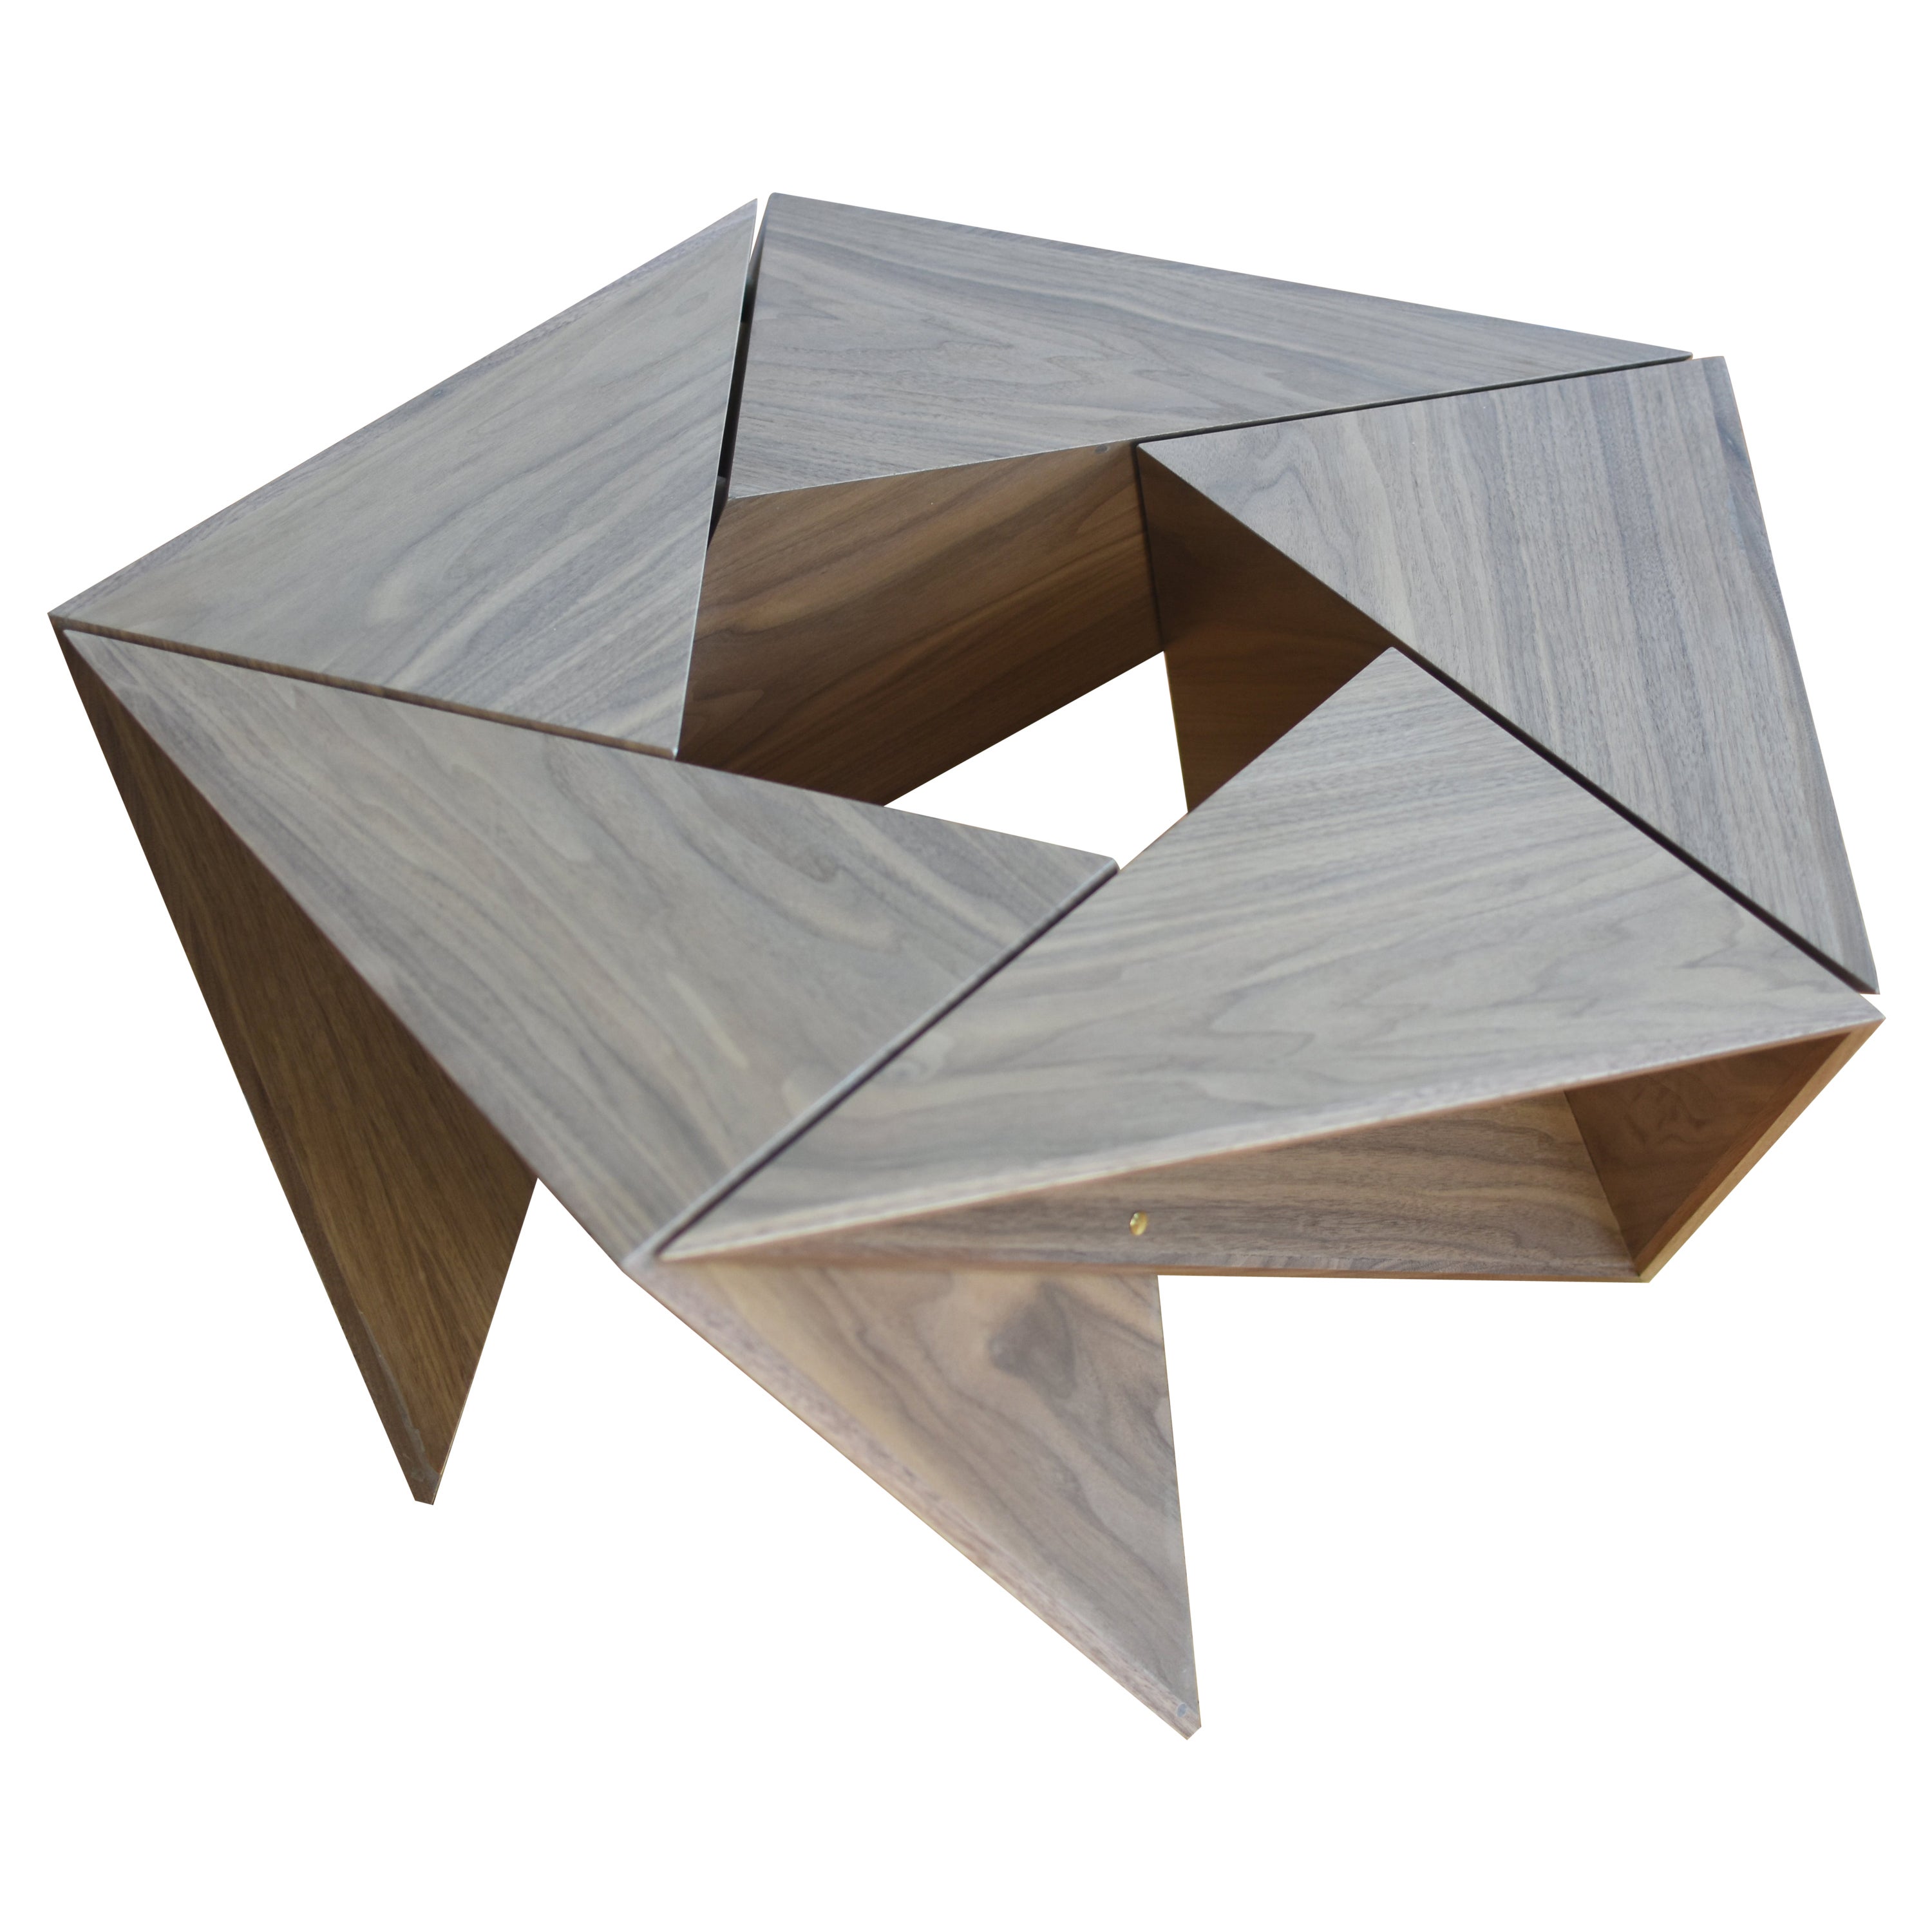 El Cangrejito, Pentagonal, Modularer Couchtisch aus Nussbaumholz von Louis Lim